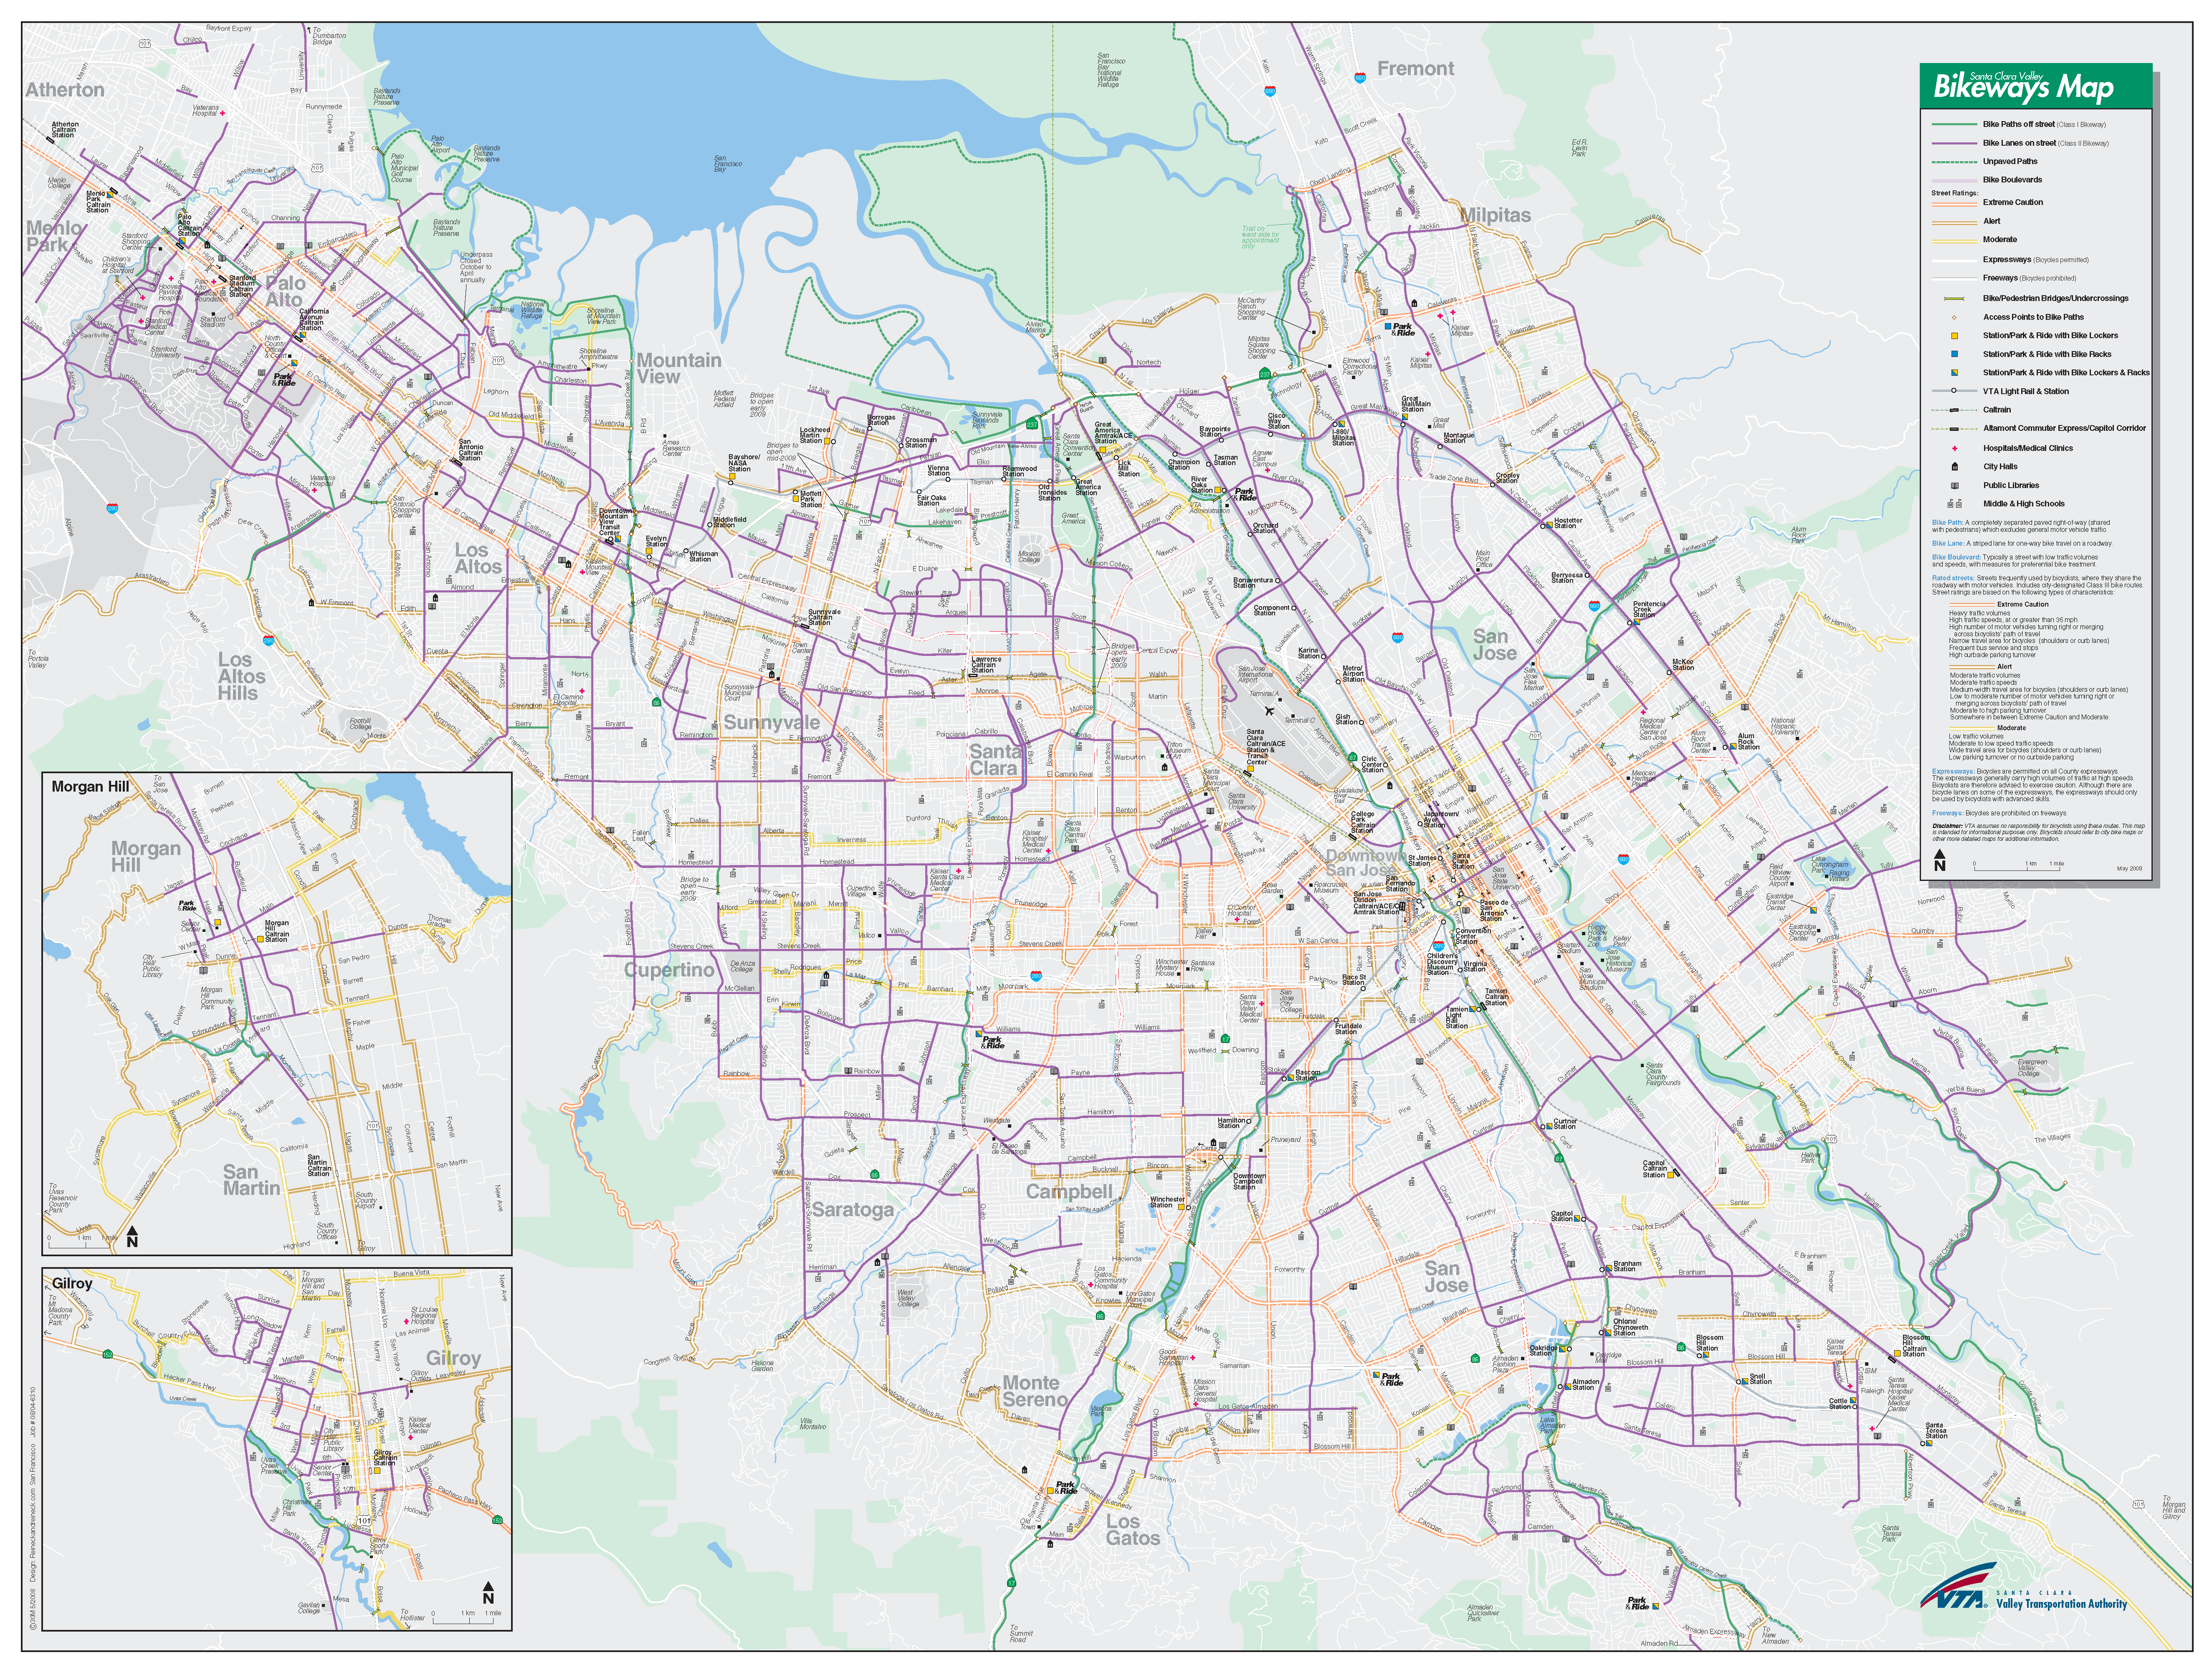 Santa Clara County Bikeways Map